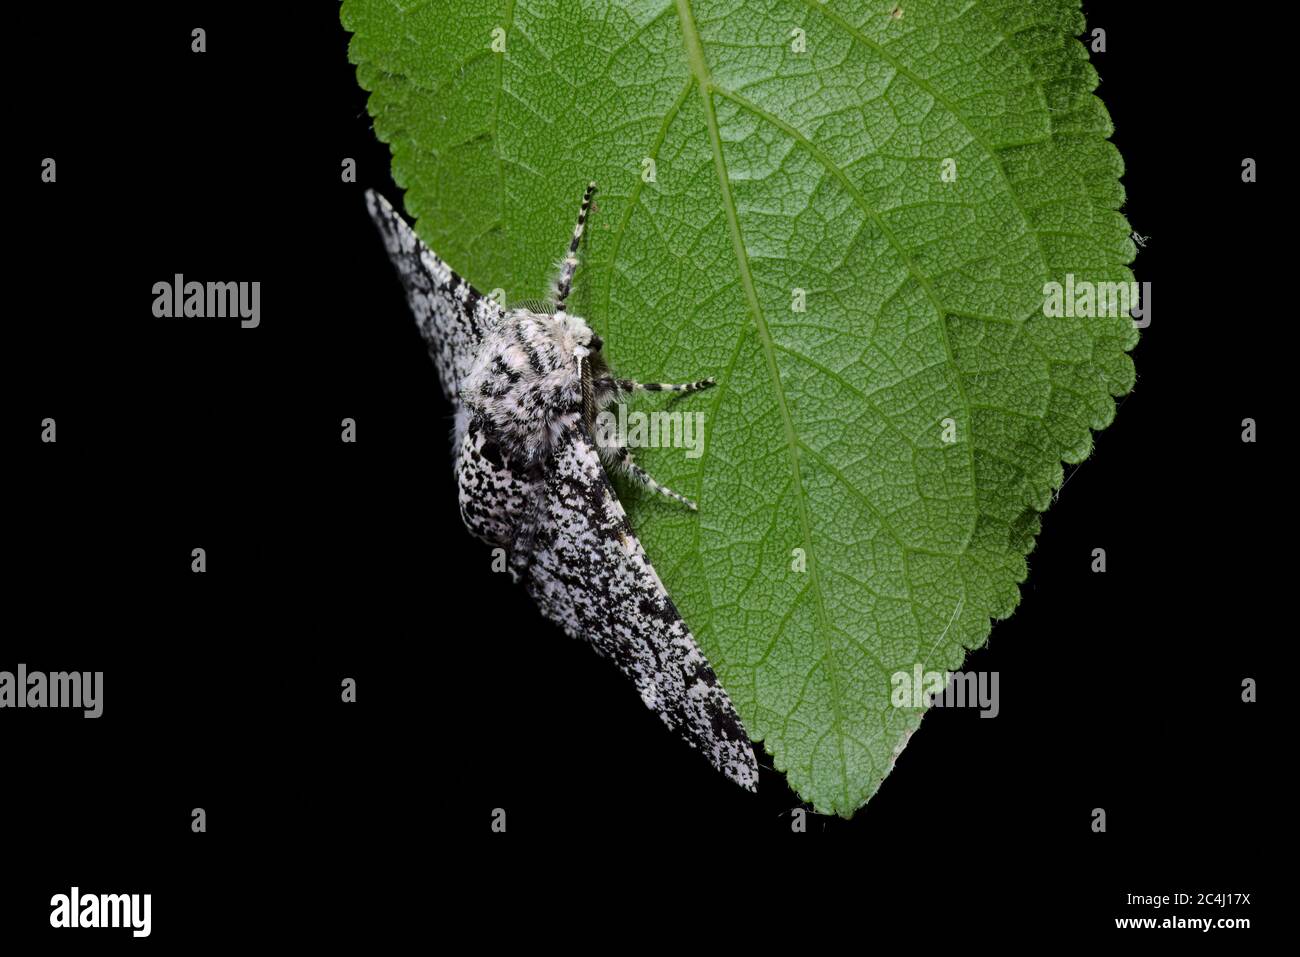 Ein reiner schwarzer Hintergrund hebt ein detailliertes Makro von Körpermuster einer gespickten Motte und die Venenstruktur eines tiefgrünen Blattes hervor. Stockfoto